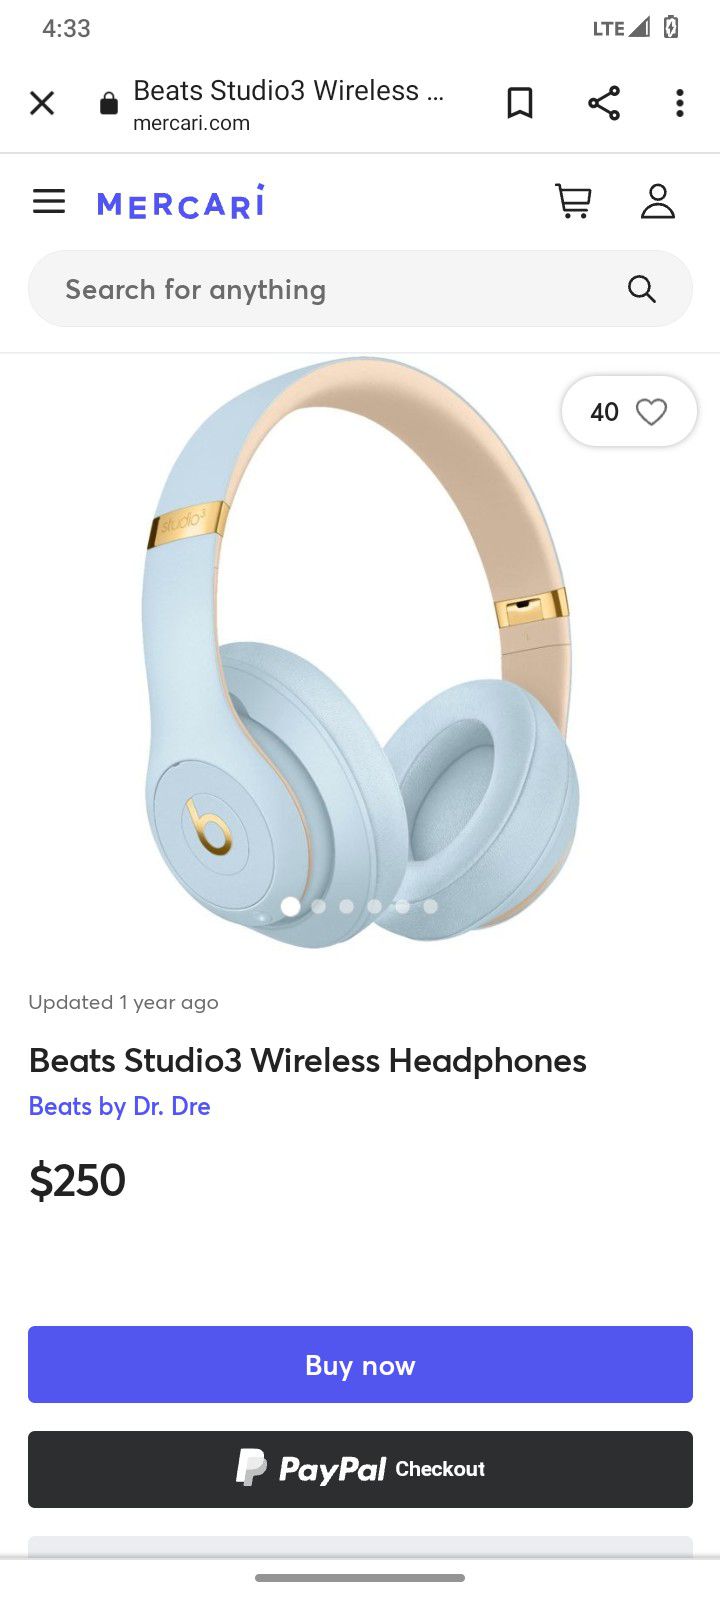 Beats Studio3 Wireless Headphones.